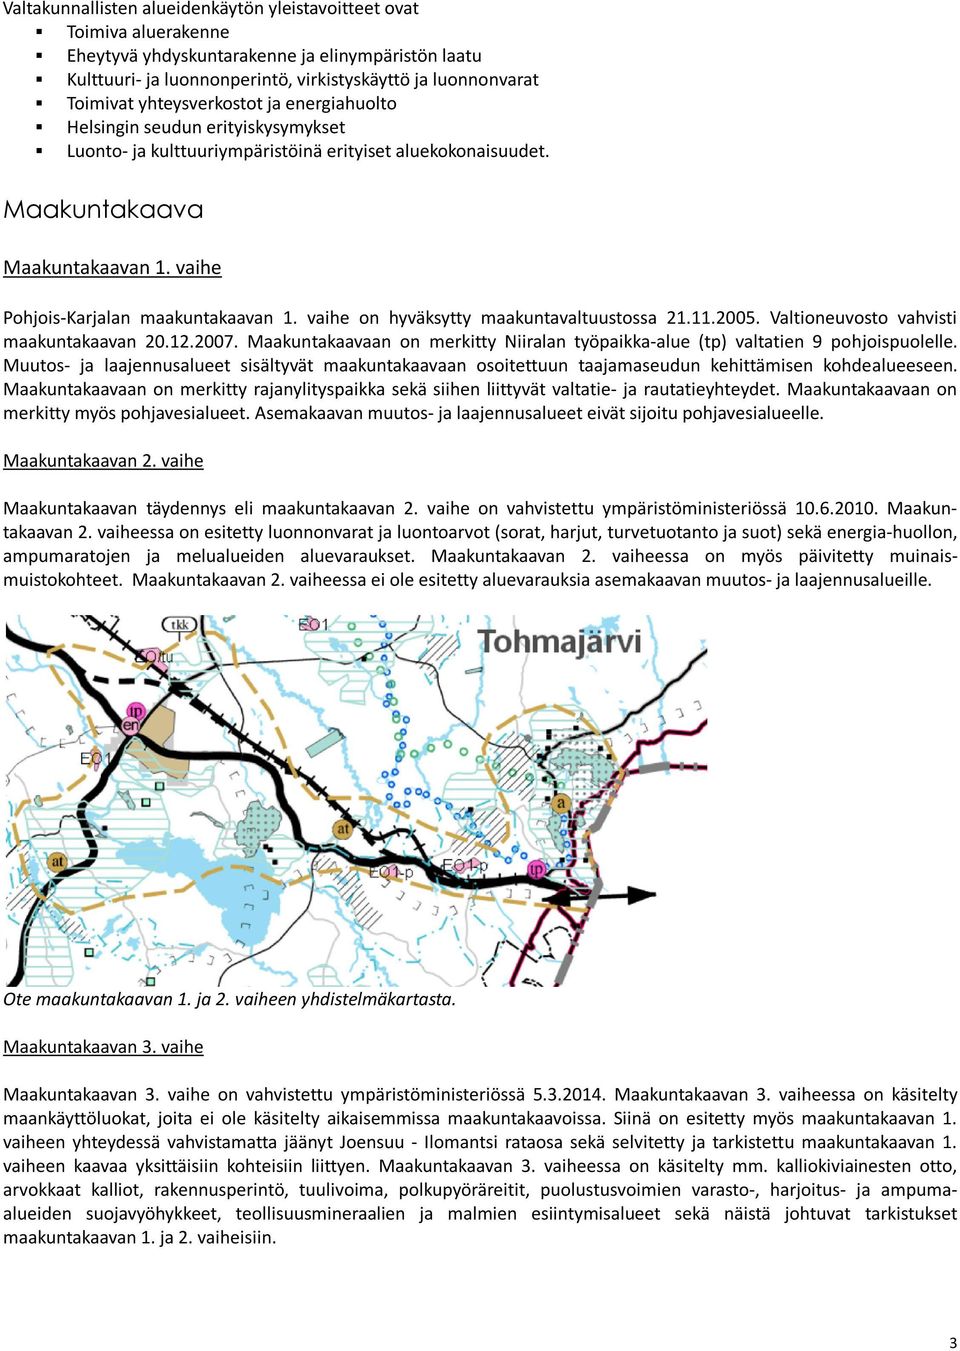 vaihe Pohjois-Karjalan maakuntakaavan 1. vaihe on hyväksytty maakuntavaltuustossa 21.11.2005. Valtioneuvosto vahvisti maakuntakaavan 20.12.2007.